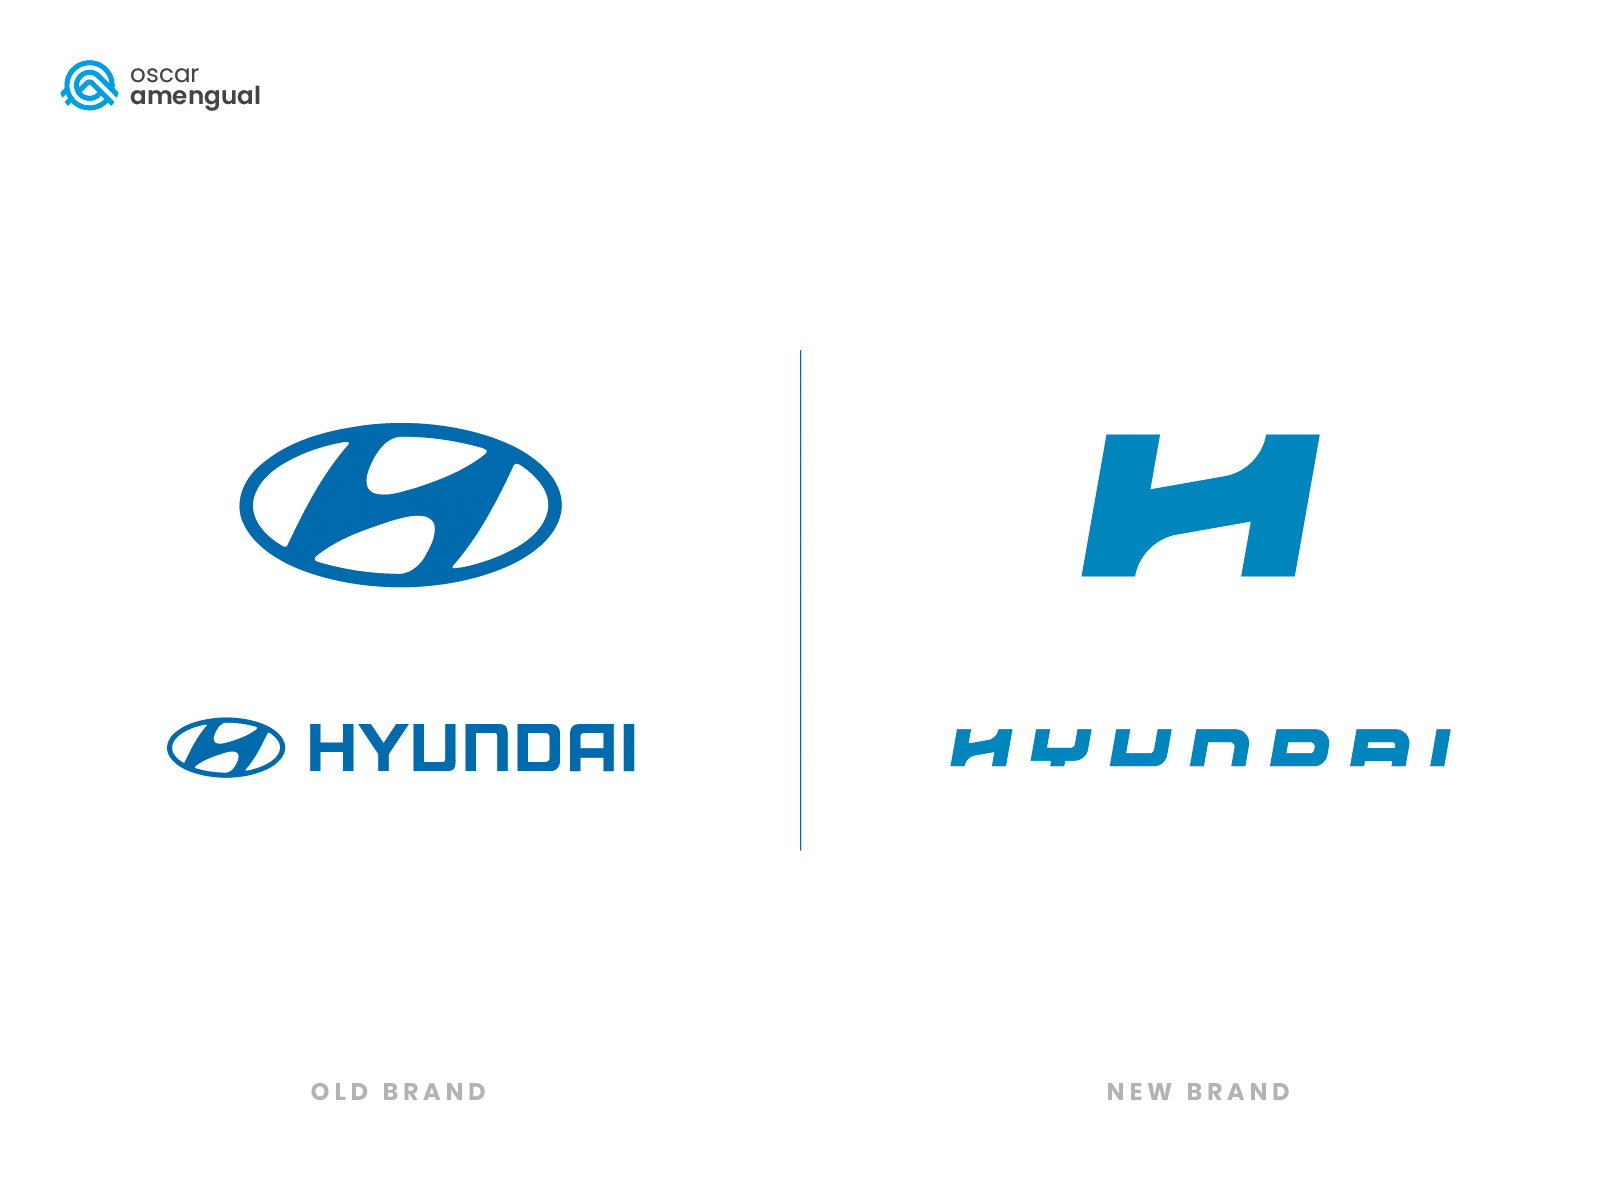 Hyundai brand redesign